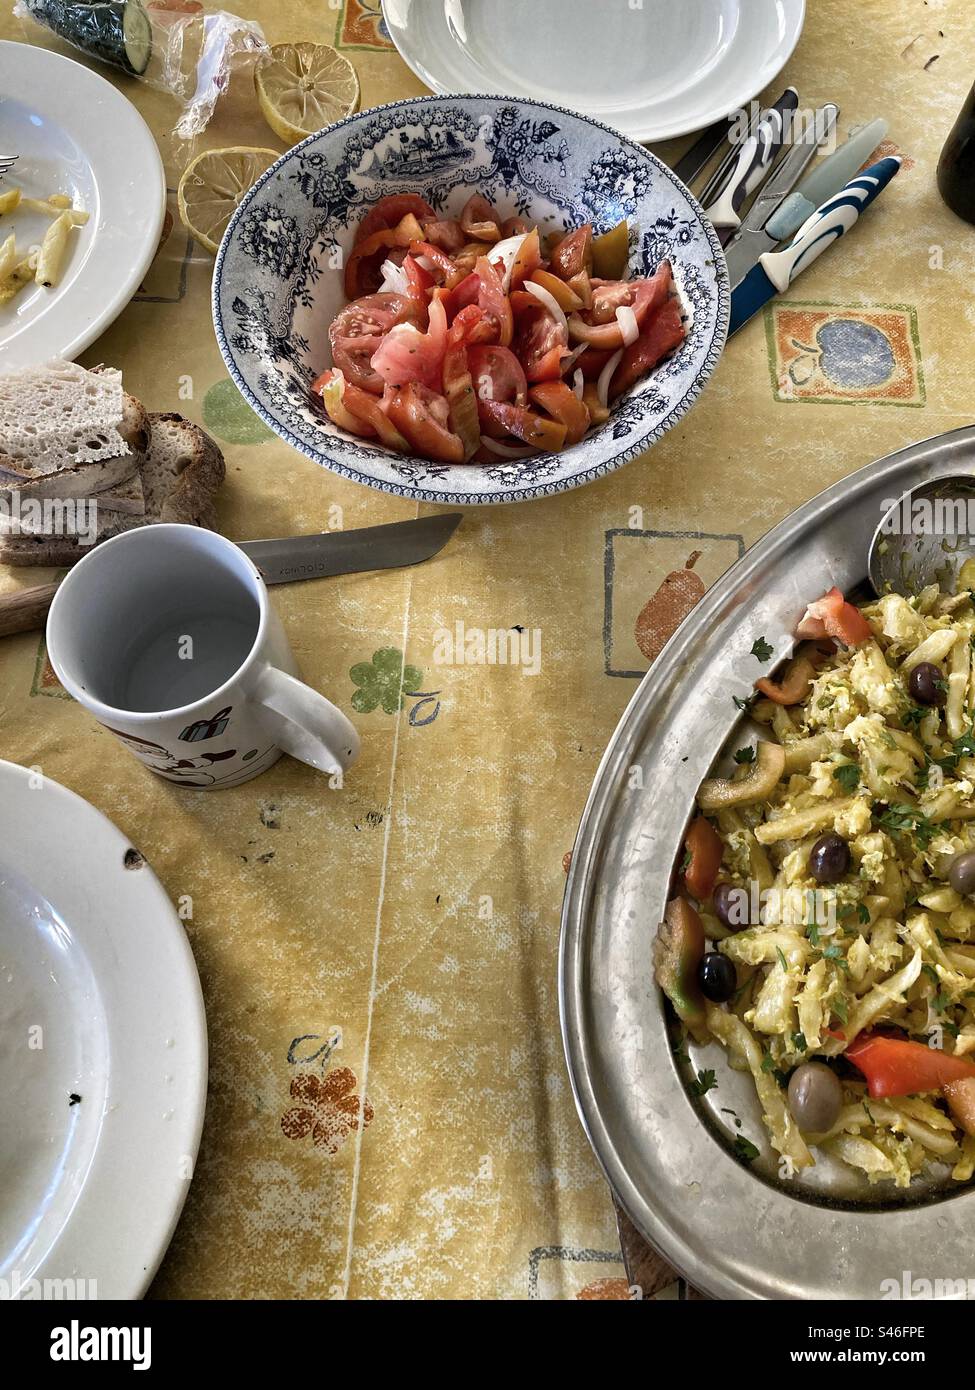 Repas portugais «bacalhau à Brás» (repas typique) et salade de tomates sur table. Avec couverts et vaisselle. Banque D'Images